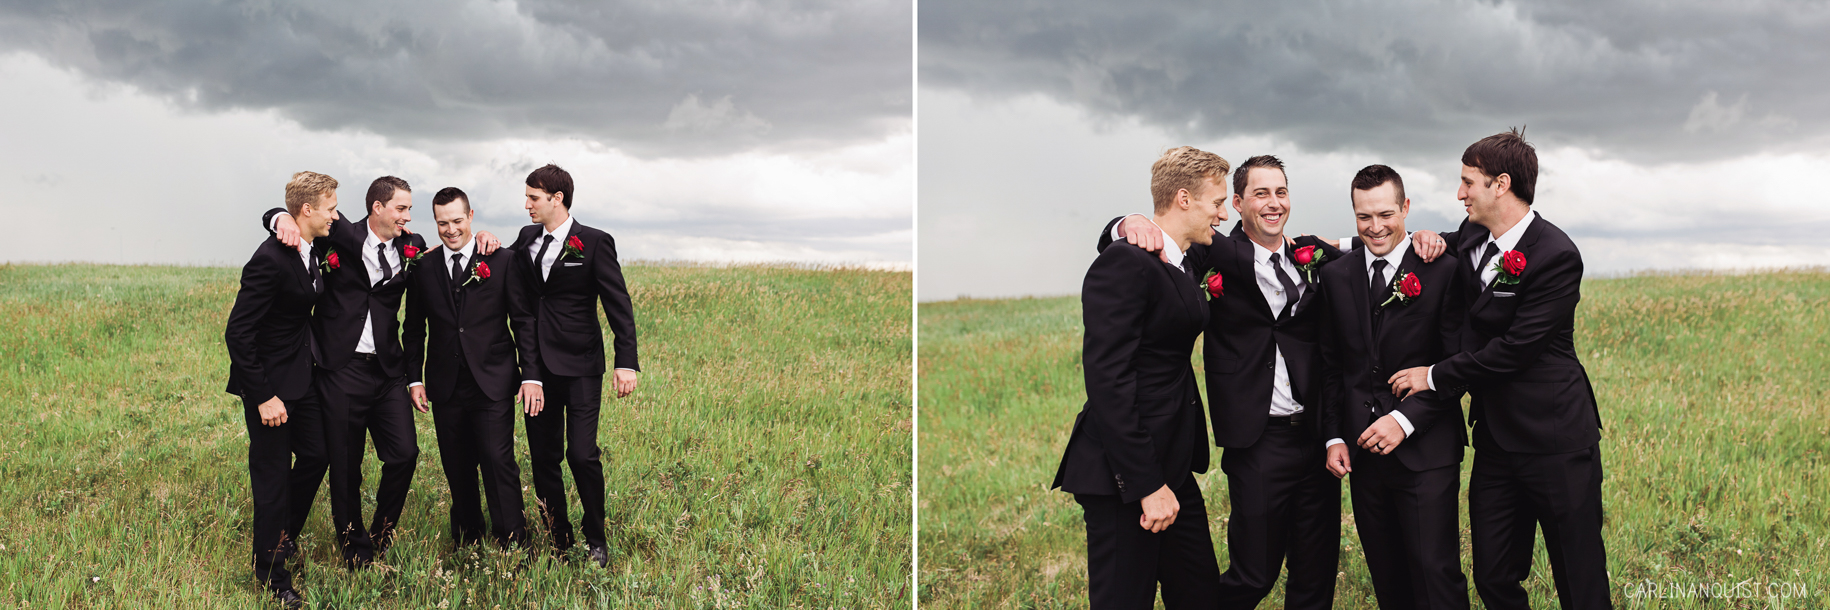 Groomsmen | Calgary Wedding Photographers 